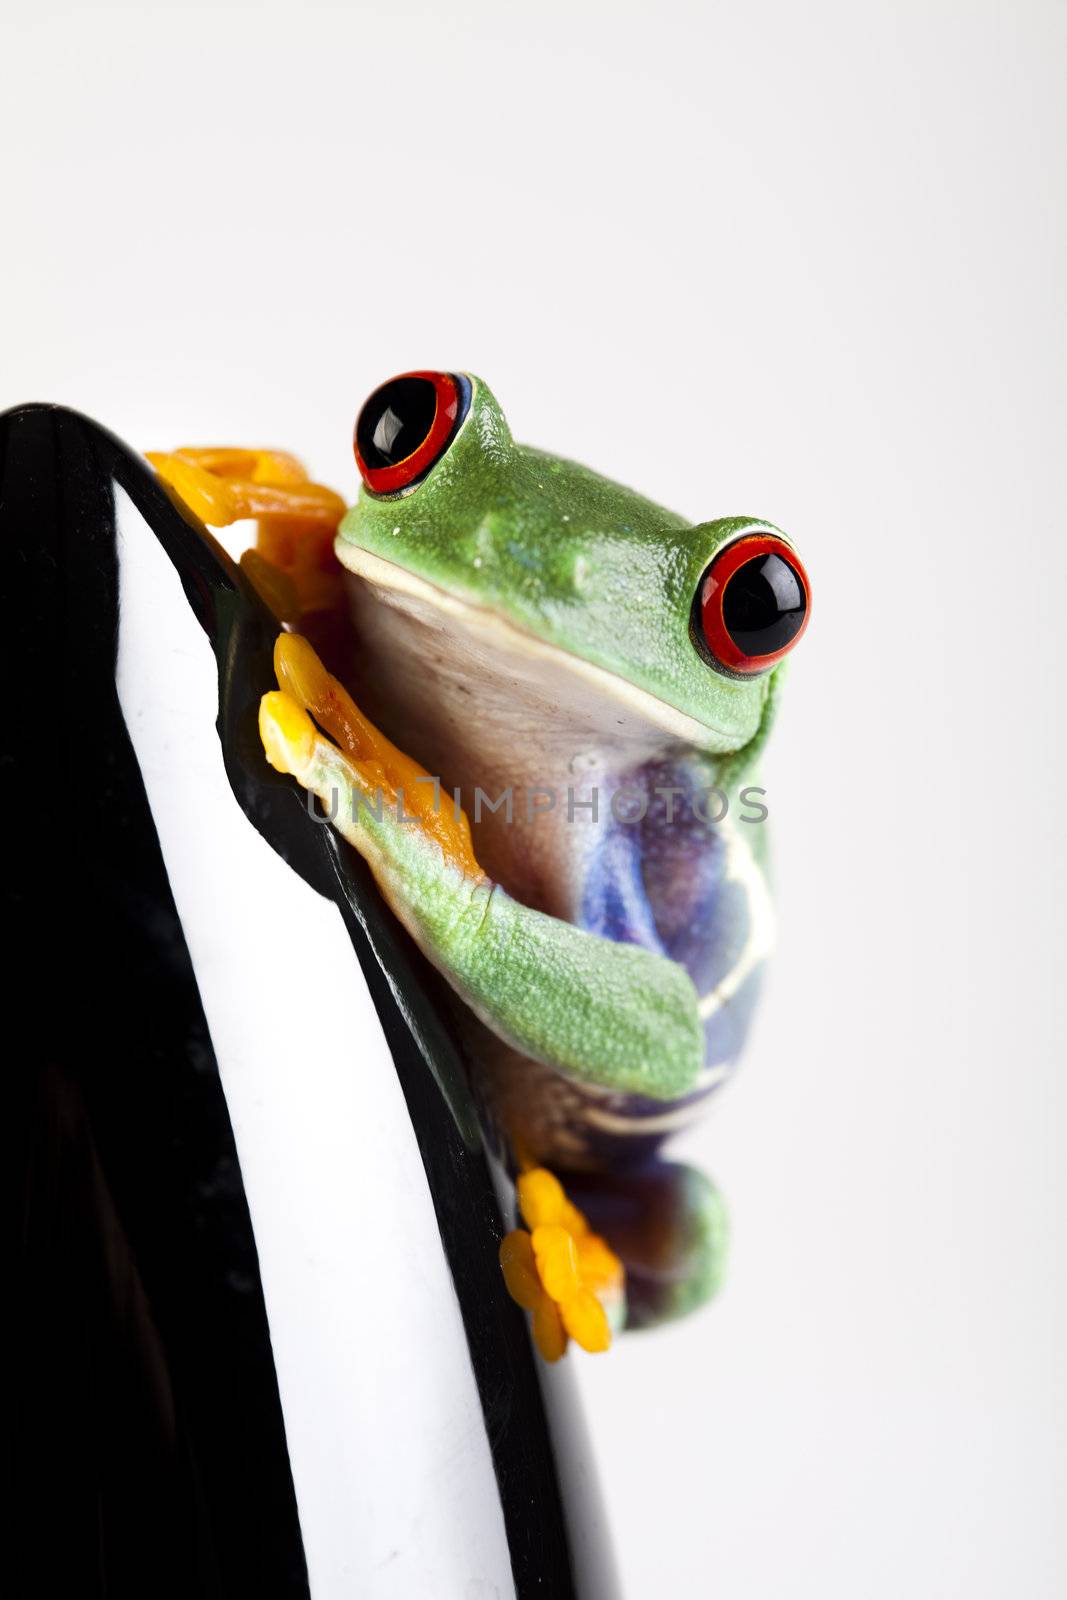 Red eye frog by JanPietruszka